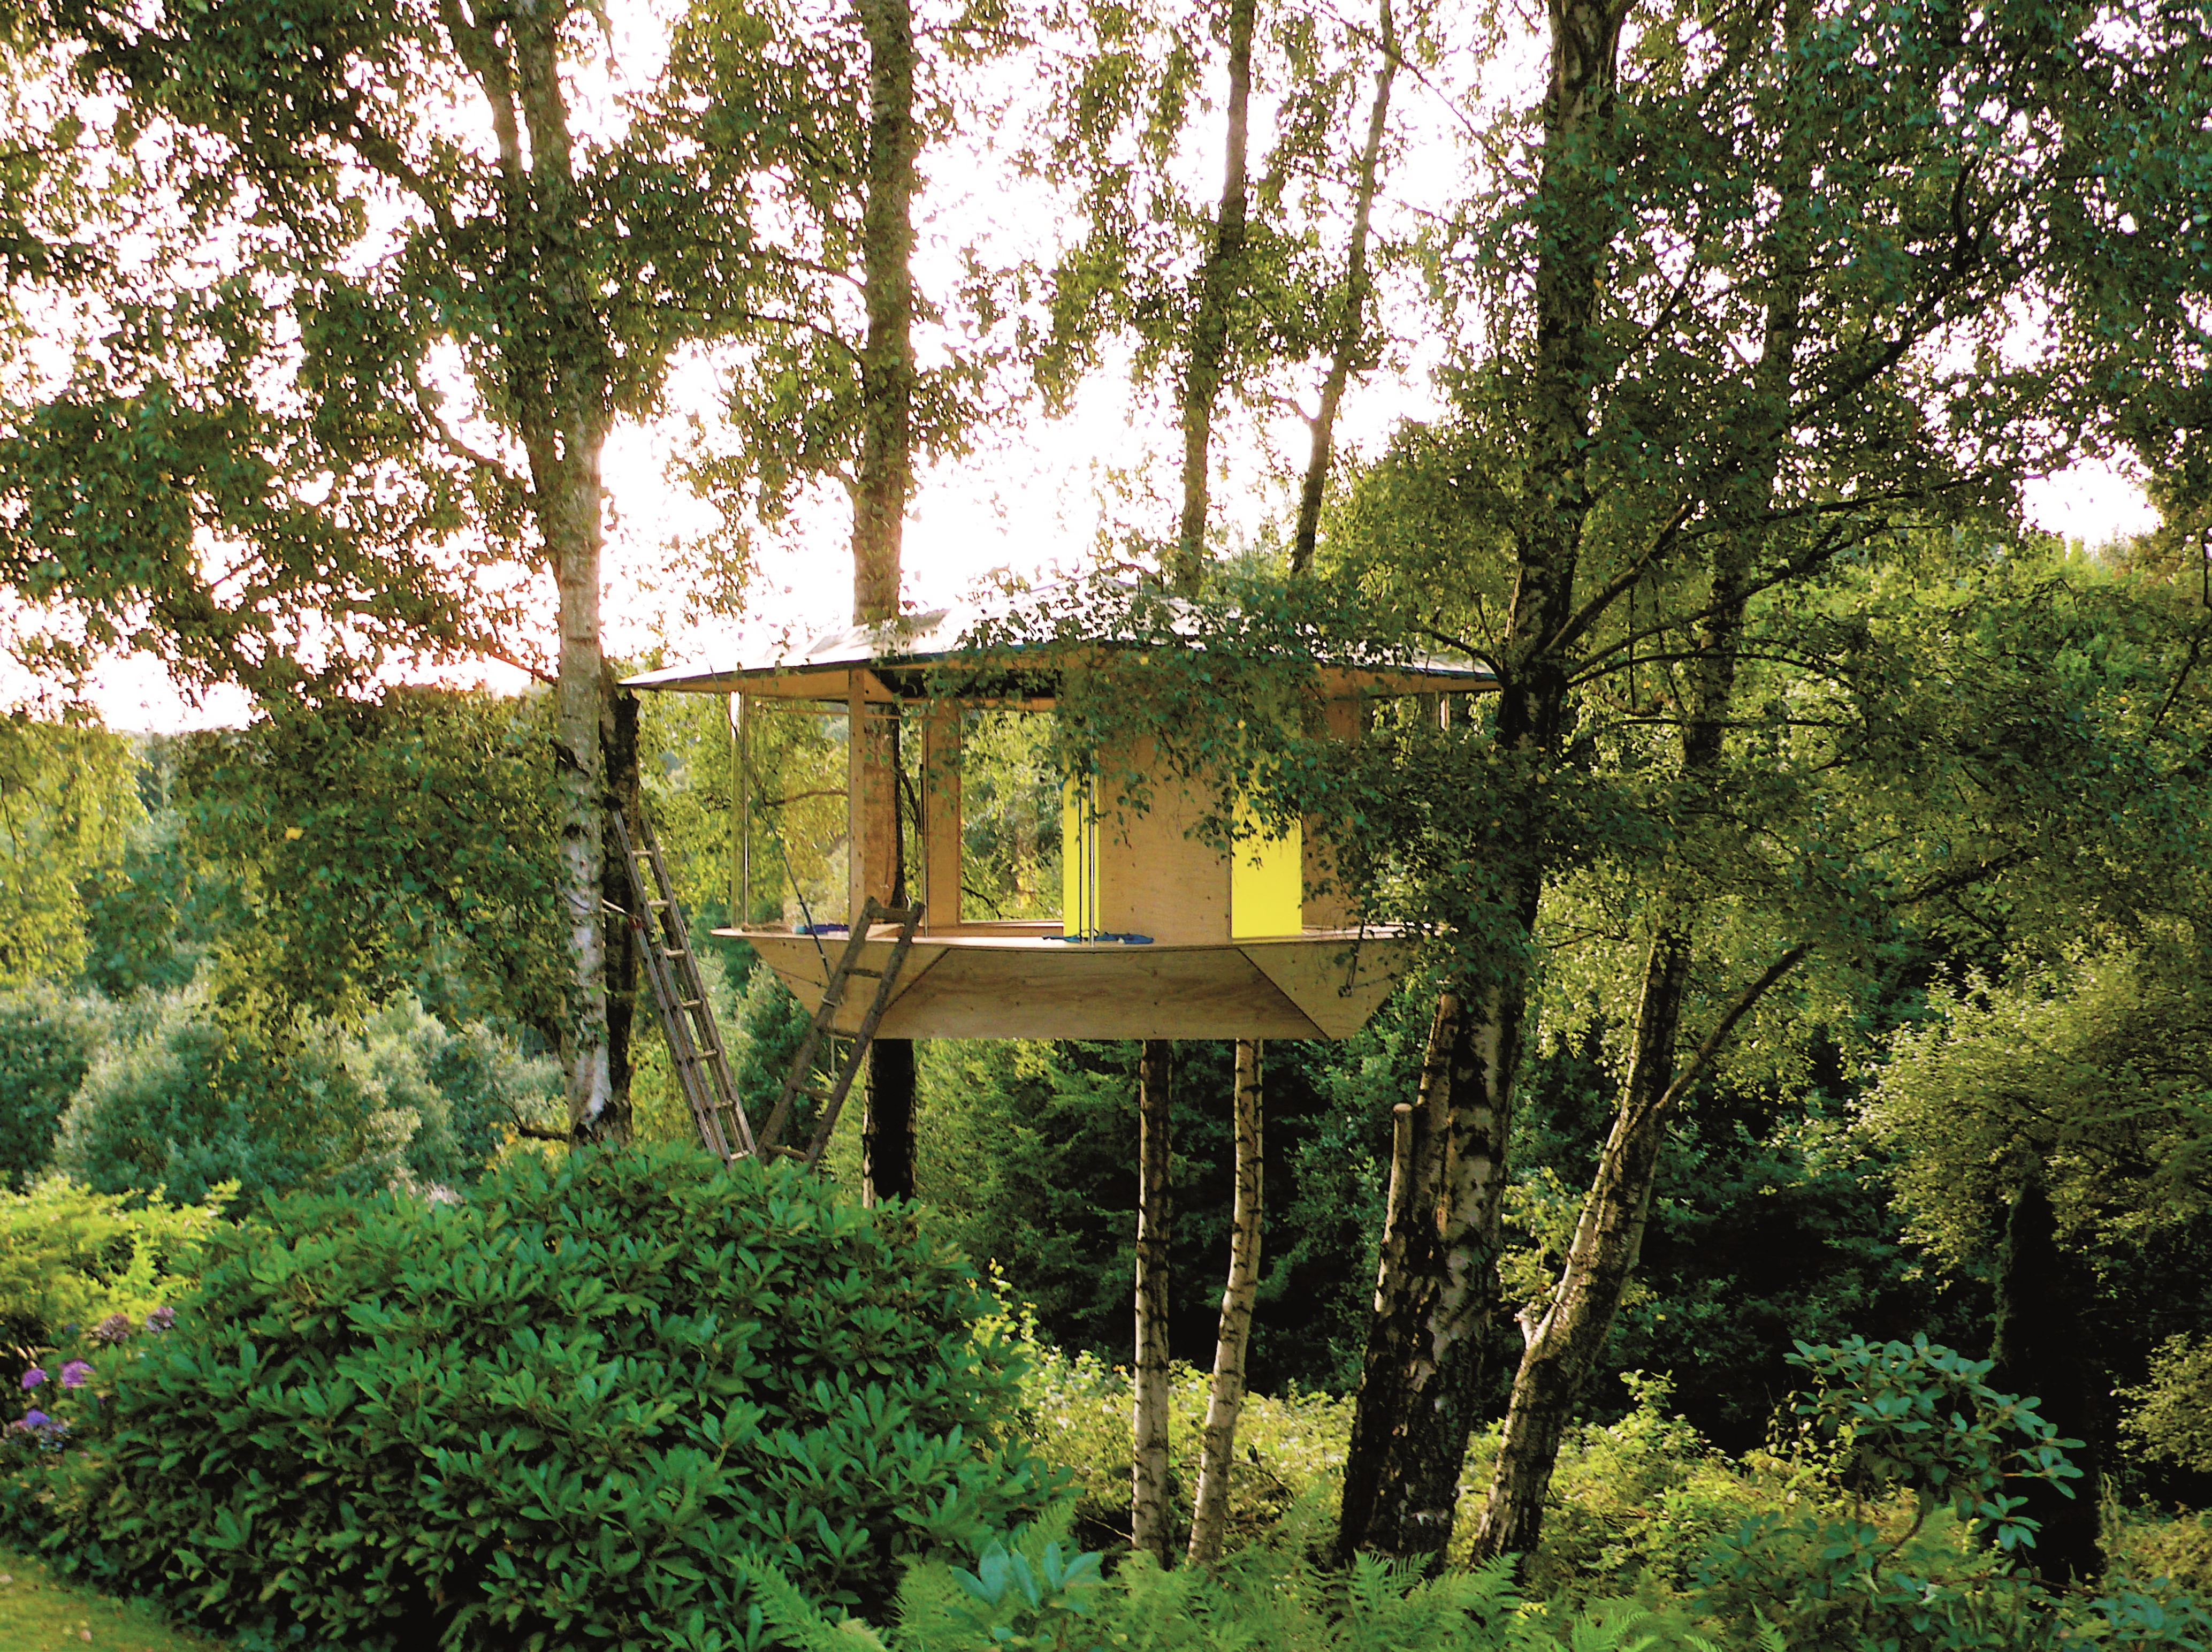 Baumhaus in Pavillonform in den Wipfeln mehrerer Bäume.